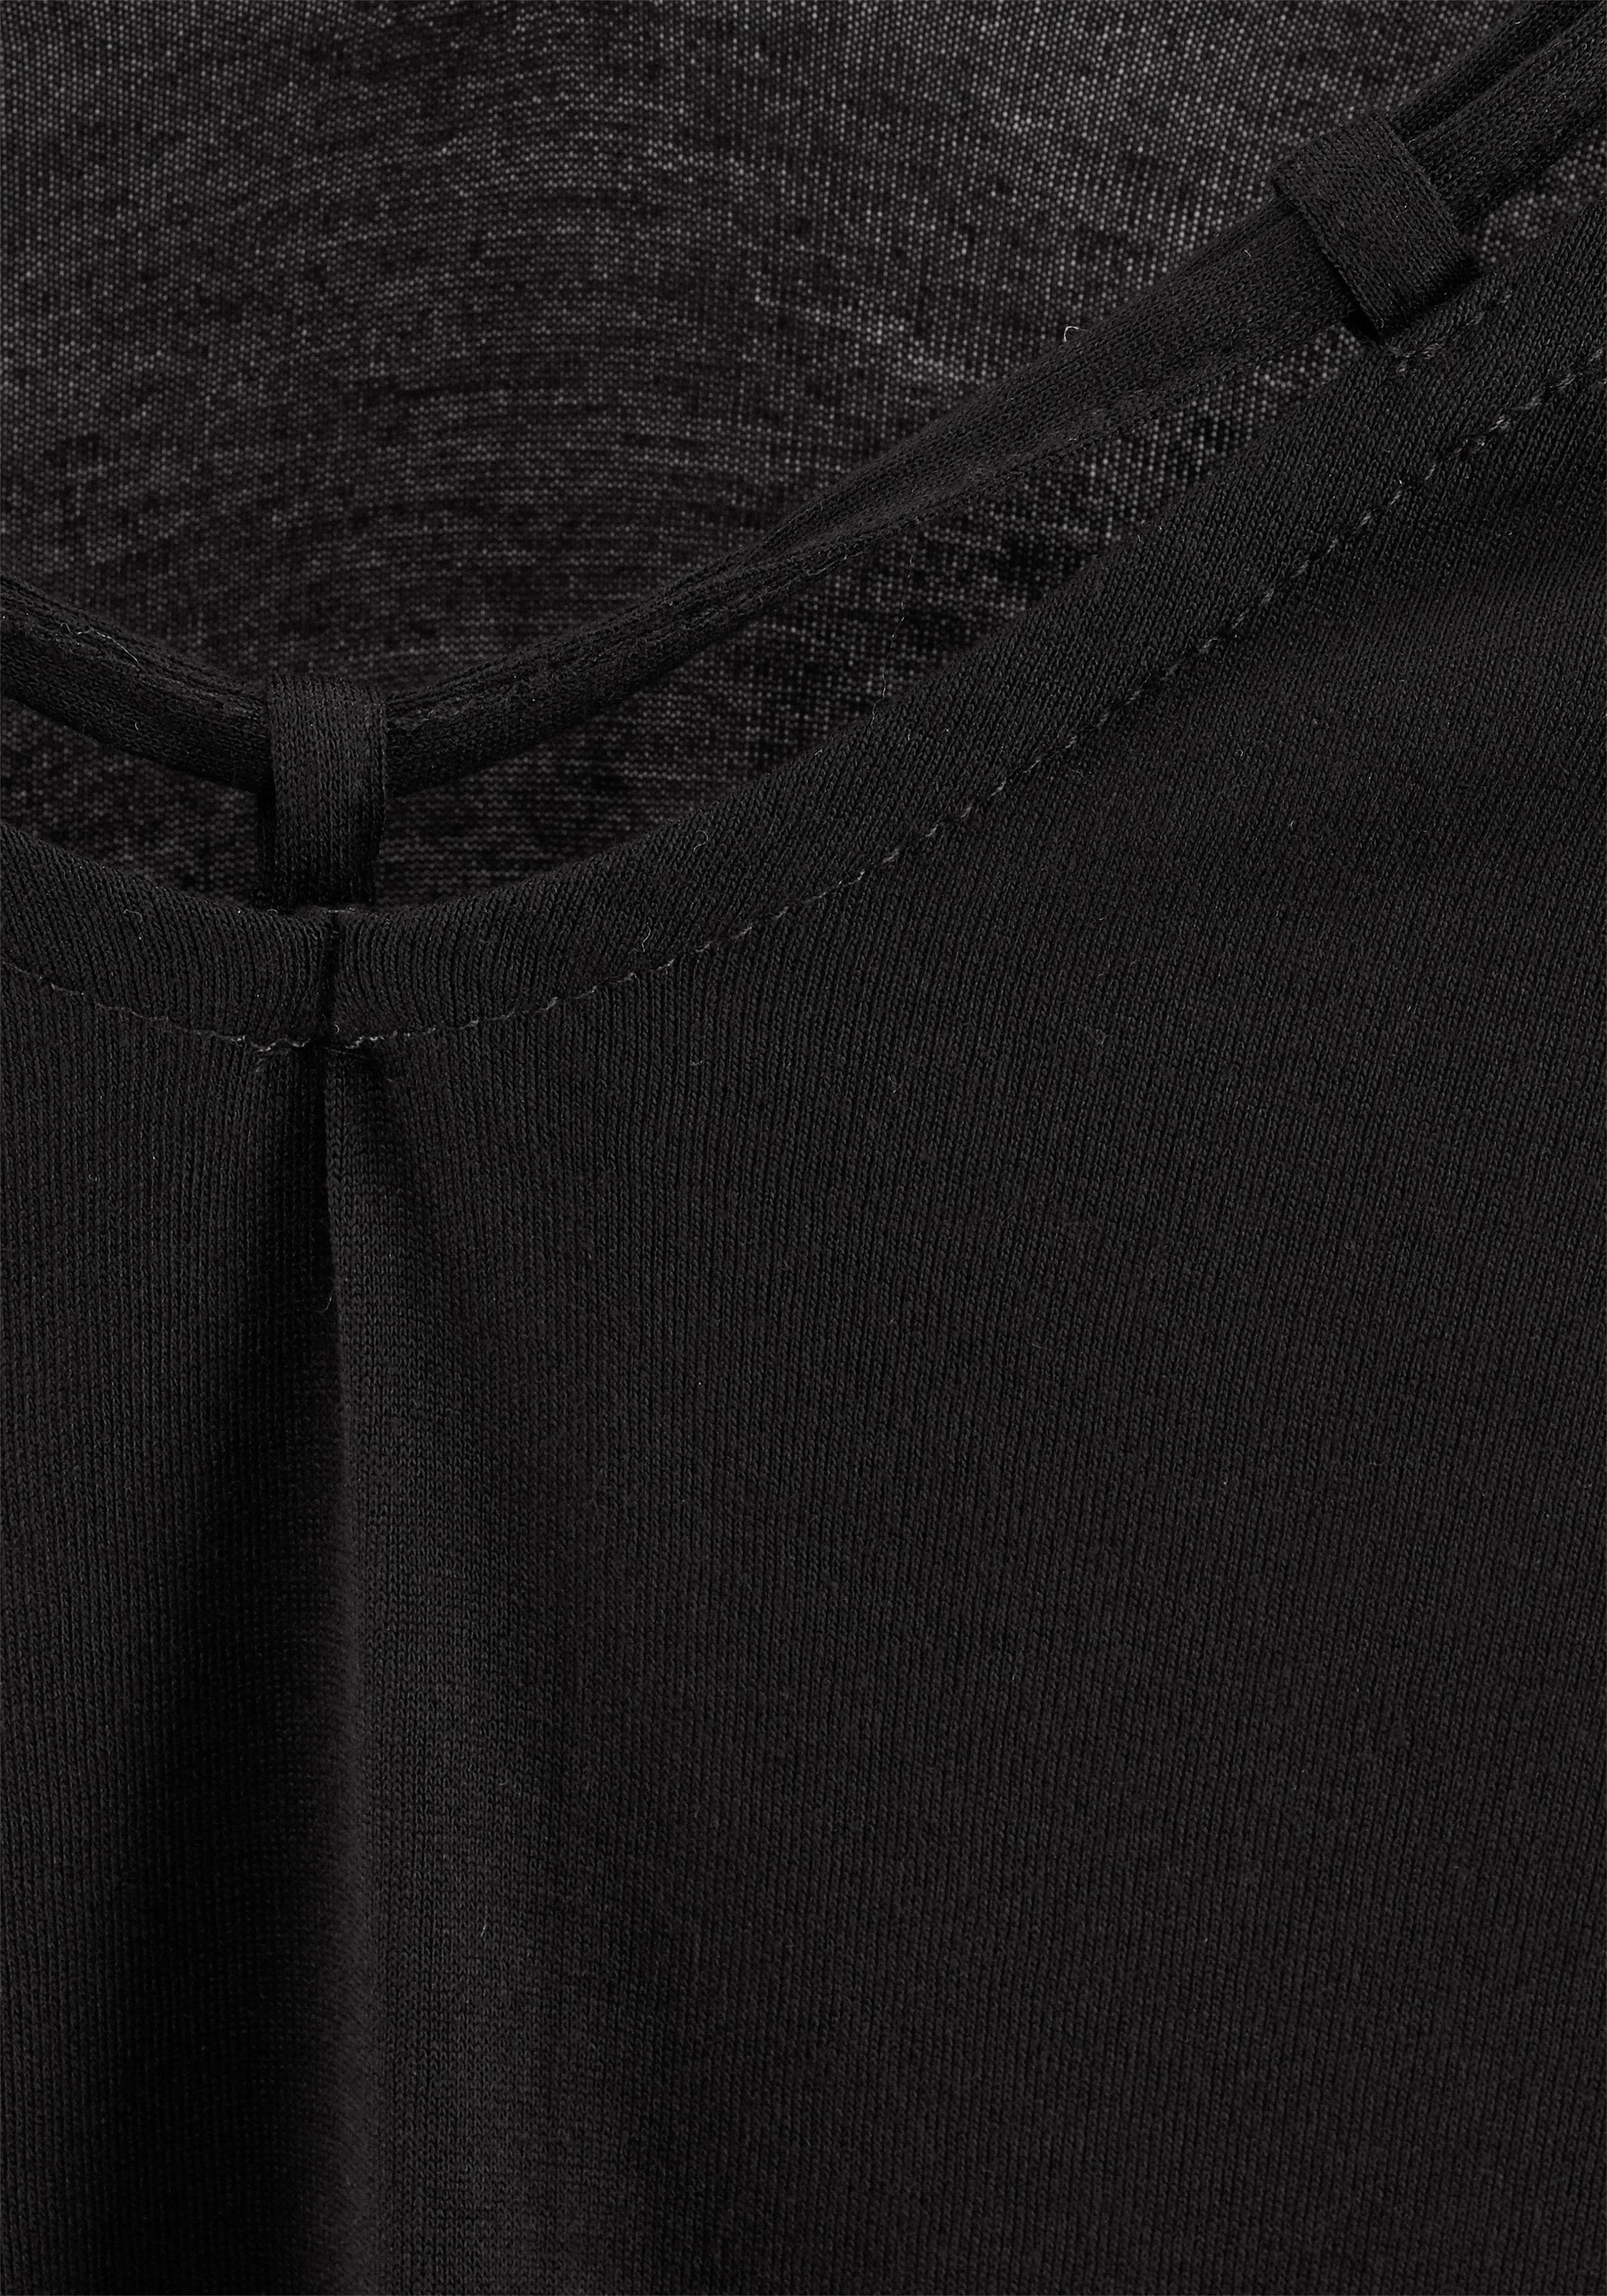 s.Oliver T-Shirt, mit Zierbändern am Ausschnitt, Kurzarmshirt, sommerlich